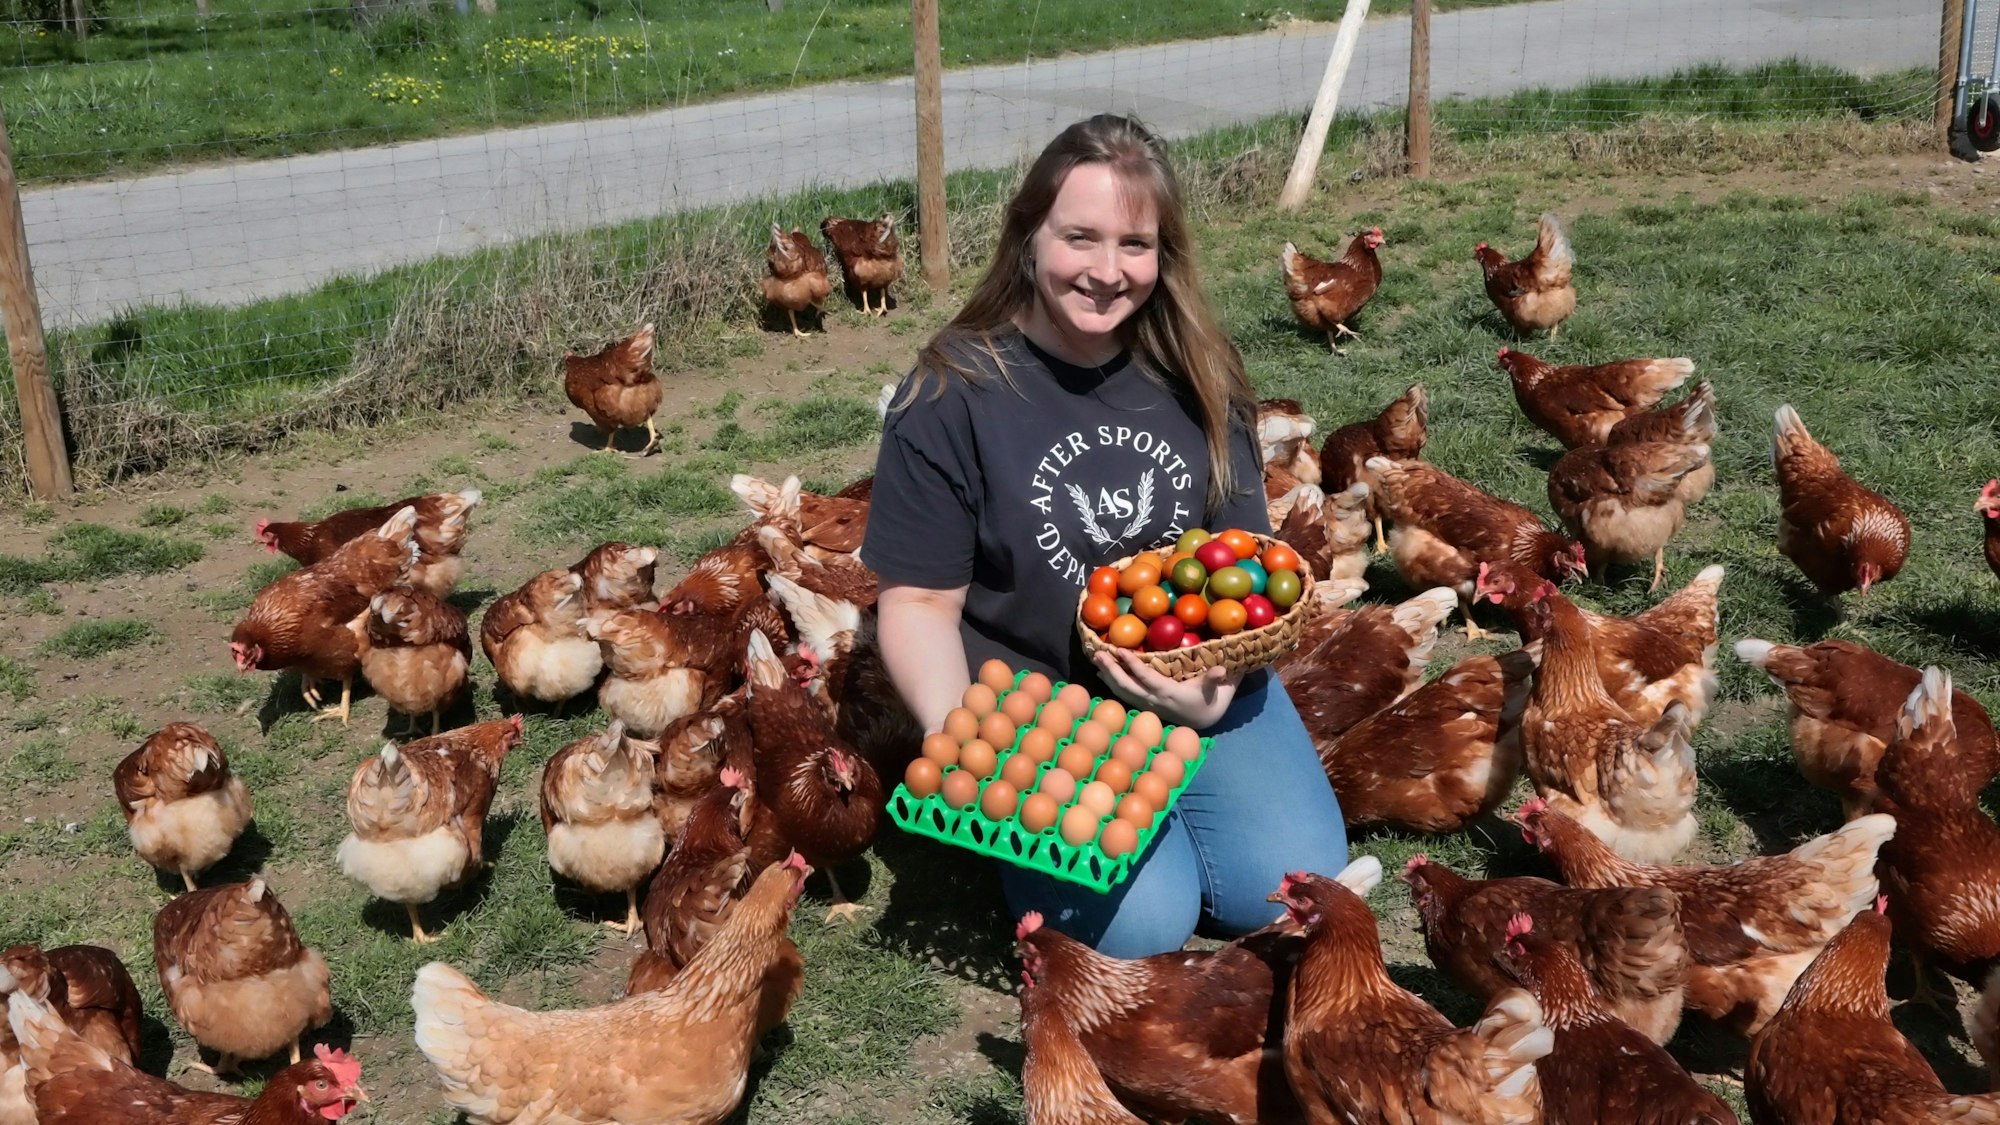 Marit Wirtz mit einem Korb und einer Palette Eiern zwischen Dutzenden Hühnern.